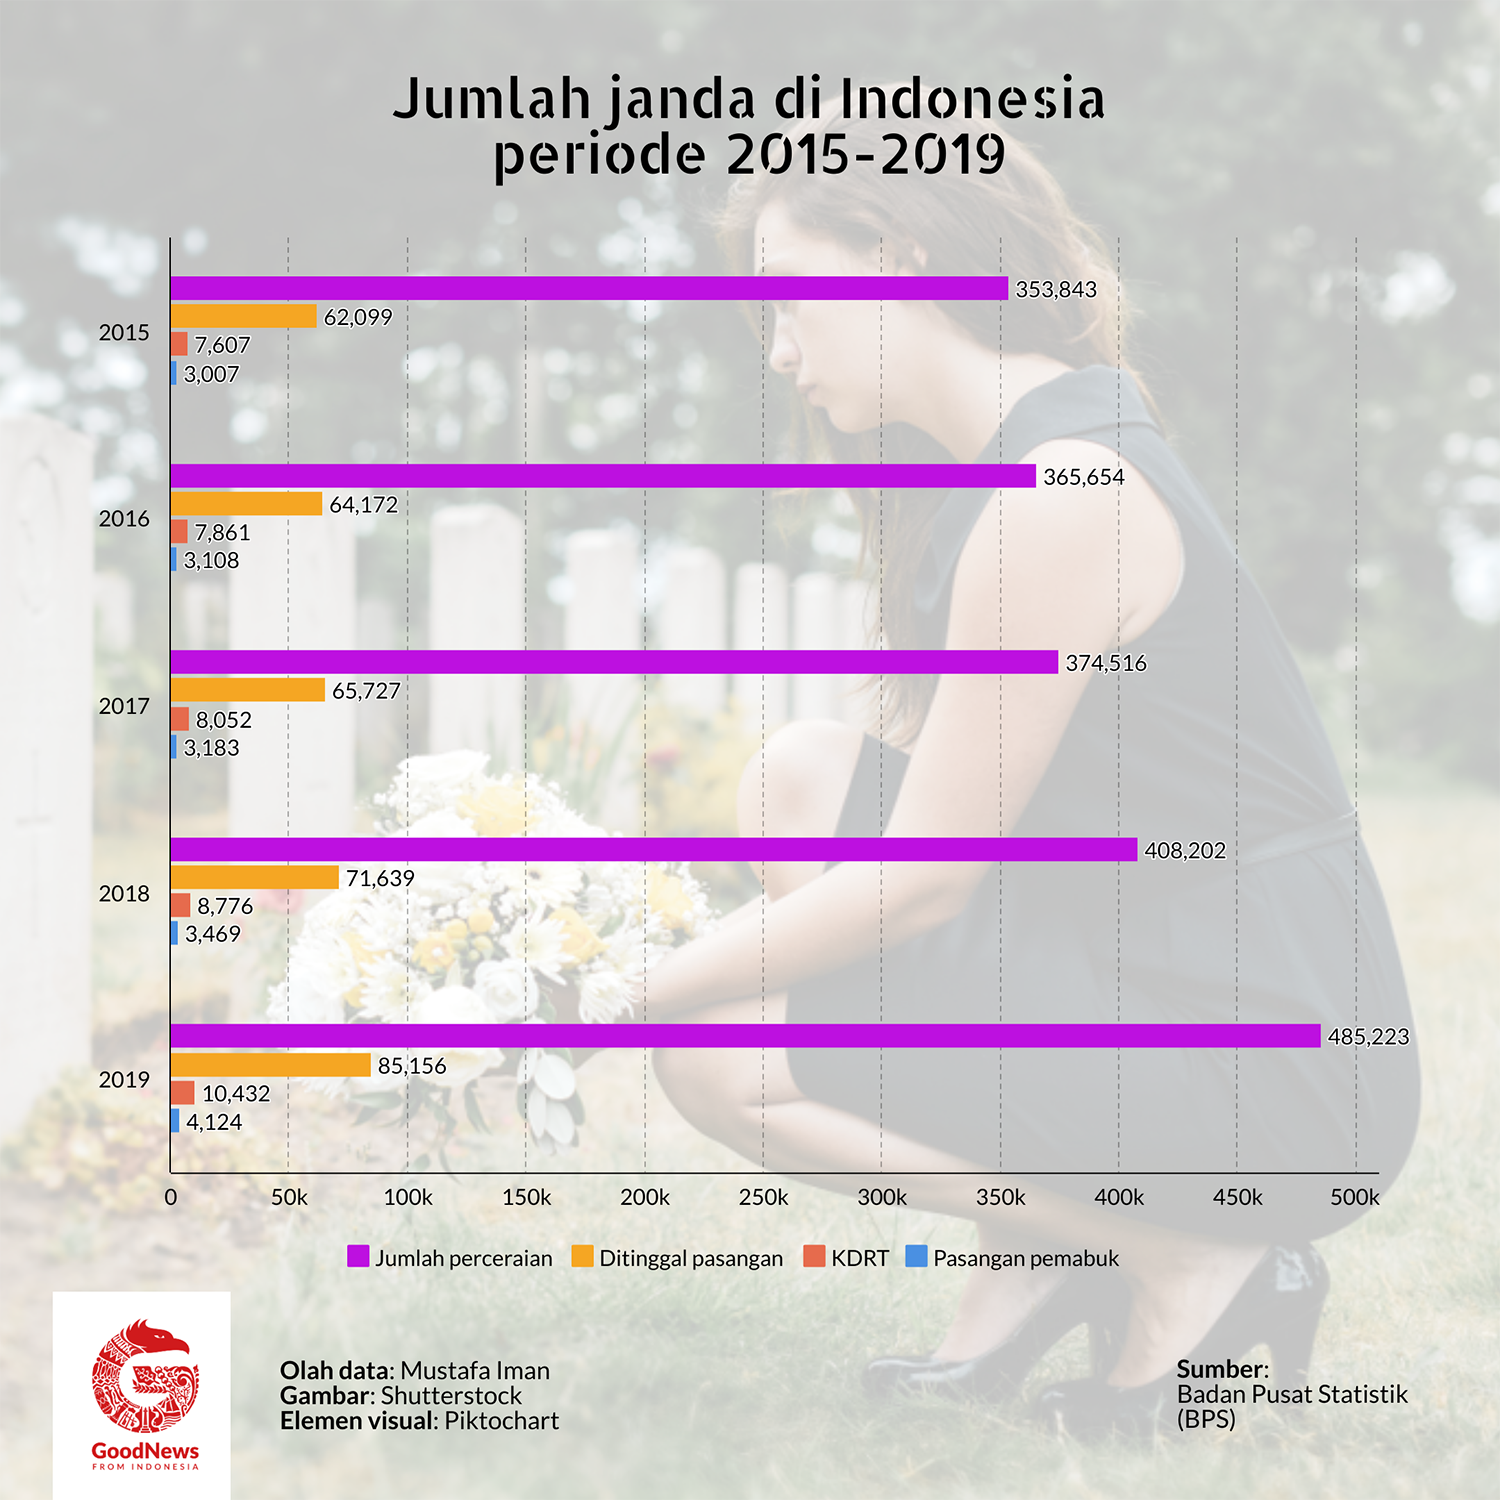 Janda di Indonesia 5 tahun terakhir